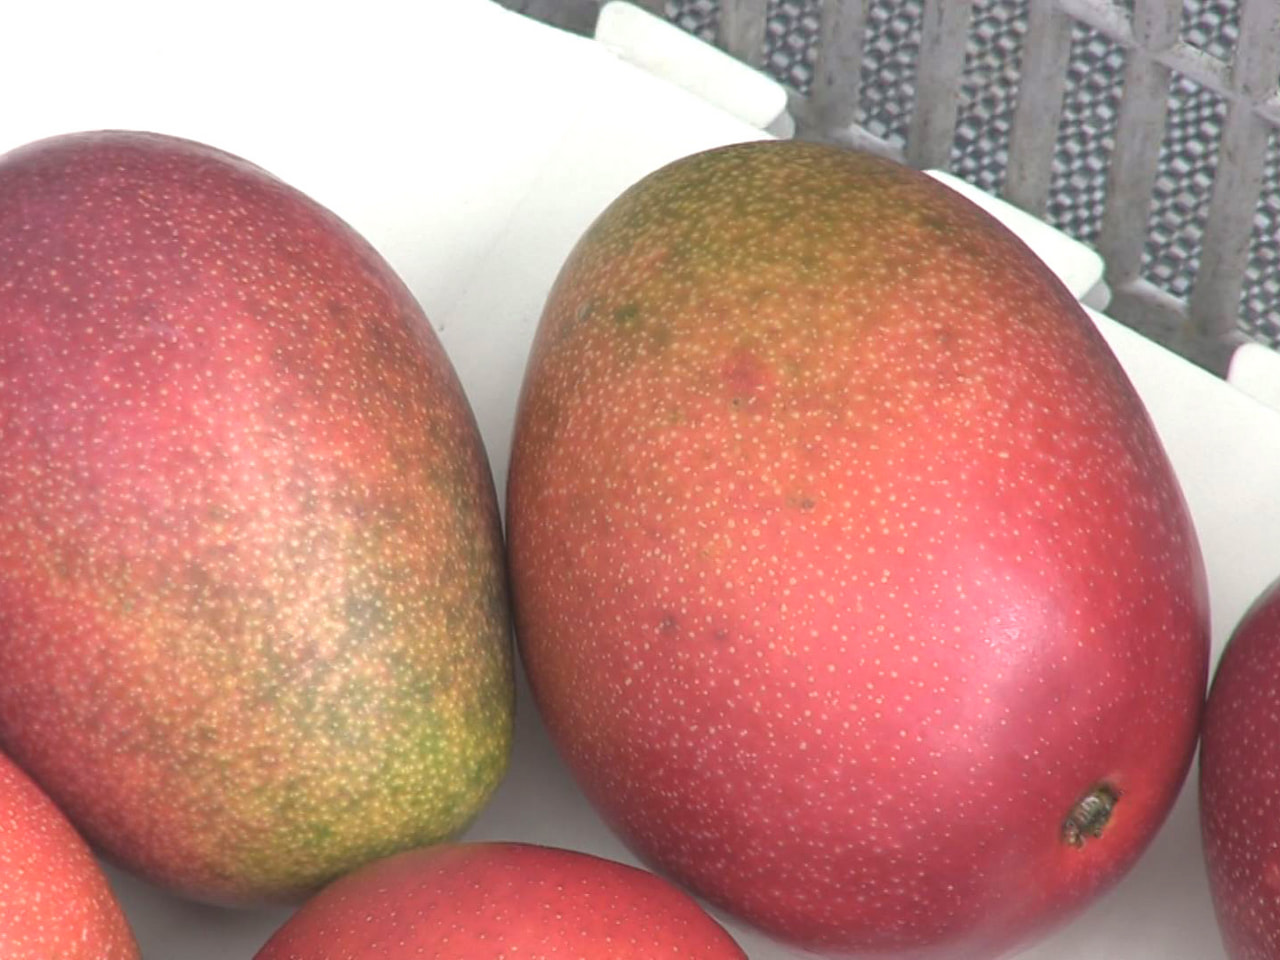 各務原市の建設会社が水の都・大垣市で栽培するマンゴーの収穫が始まりました。 マン...